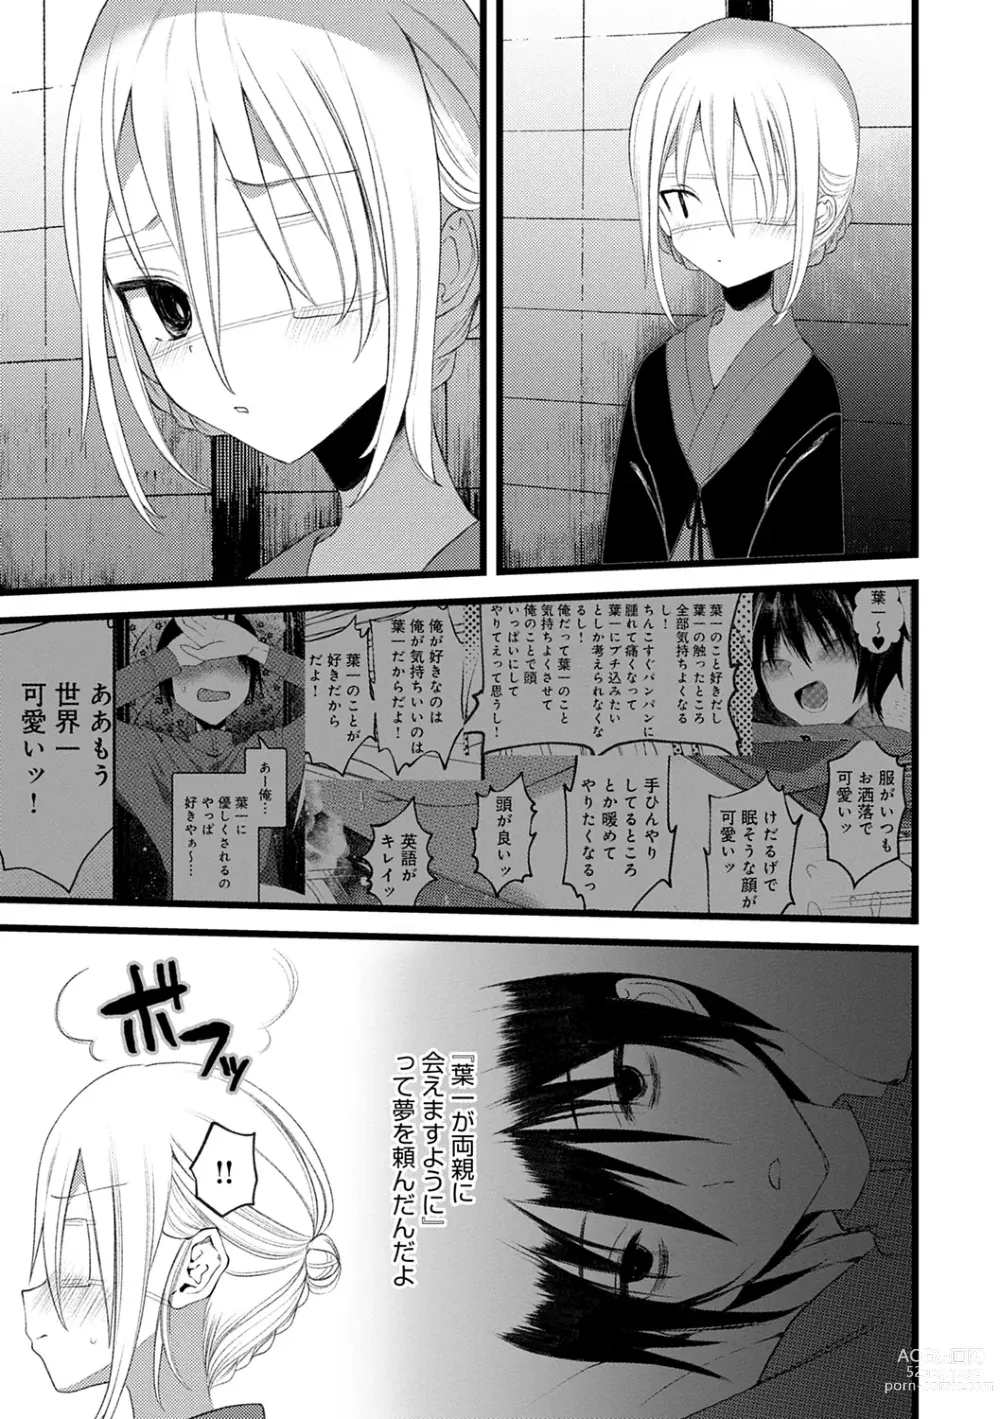 Page 193 of manga Kaiso Ikkenchou -Shonen Kaiki Inwashuu-